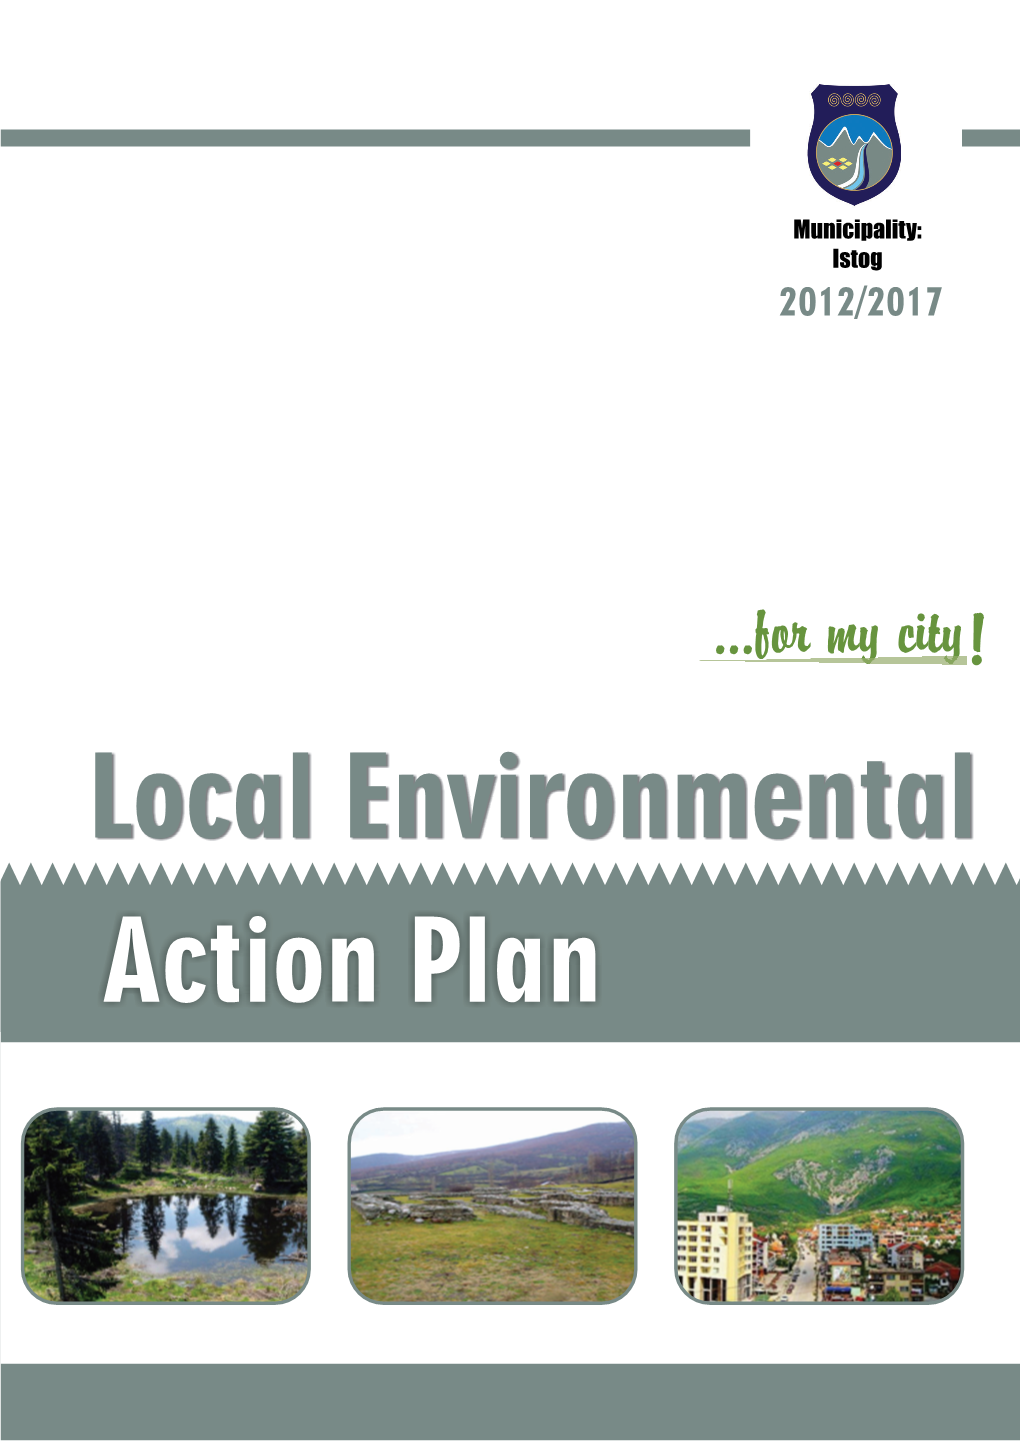 Local Environmental Action Plan 2012/2017